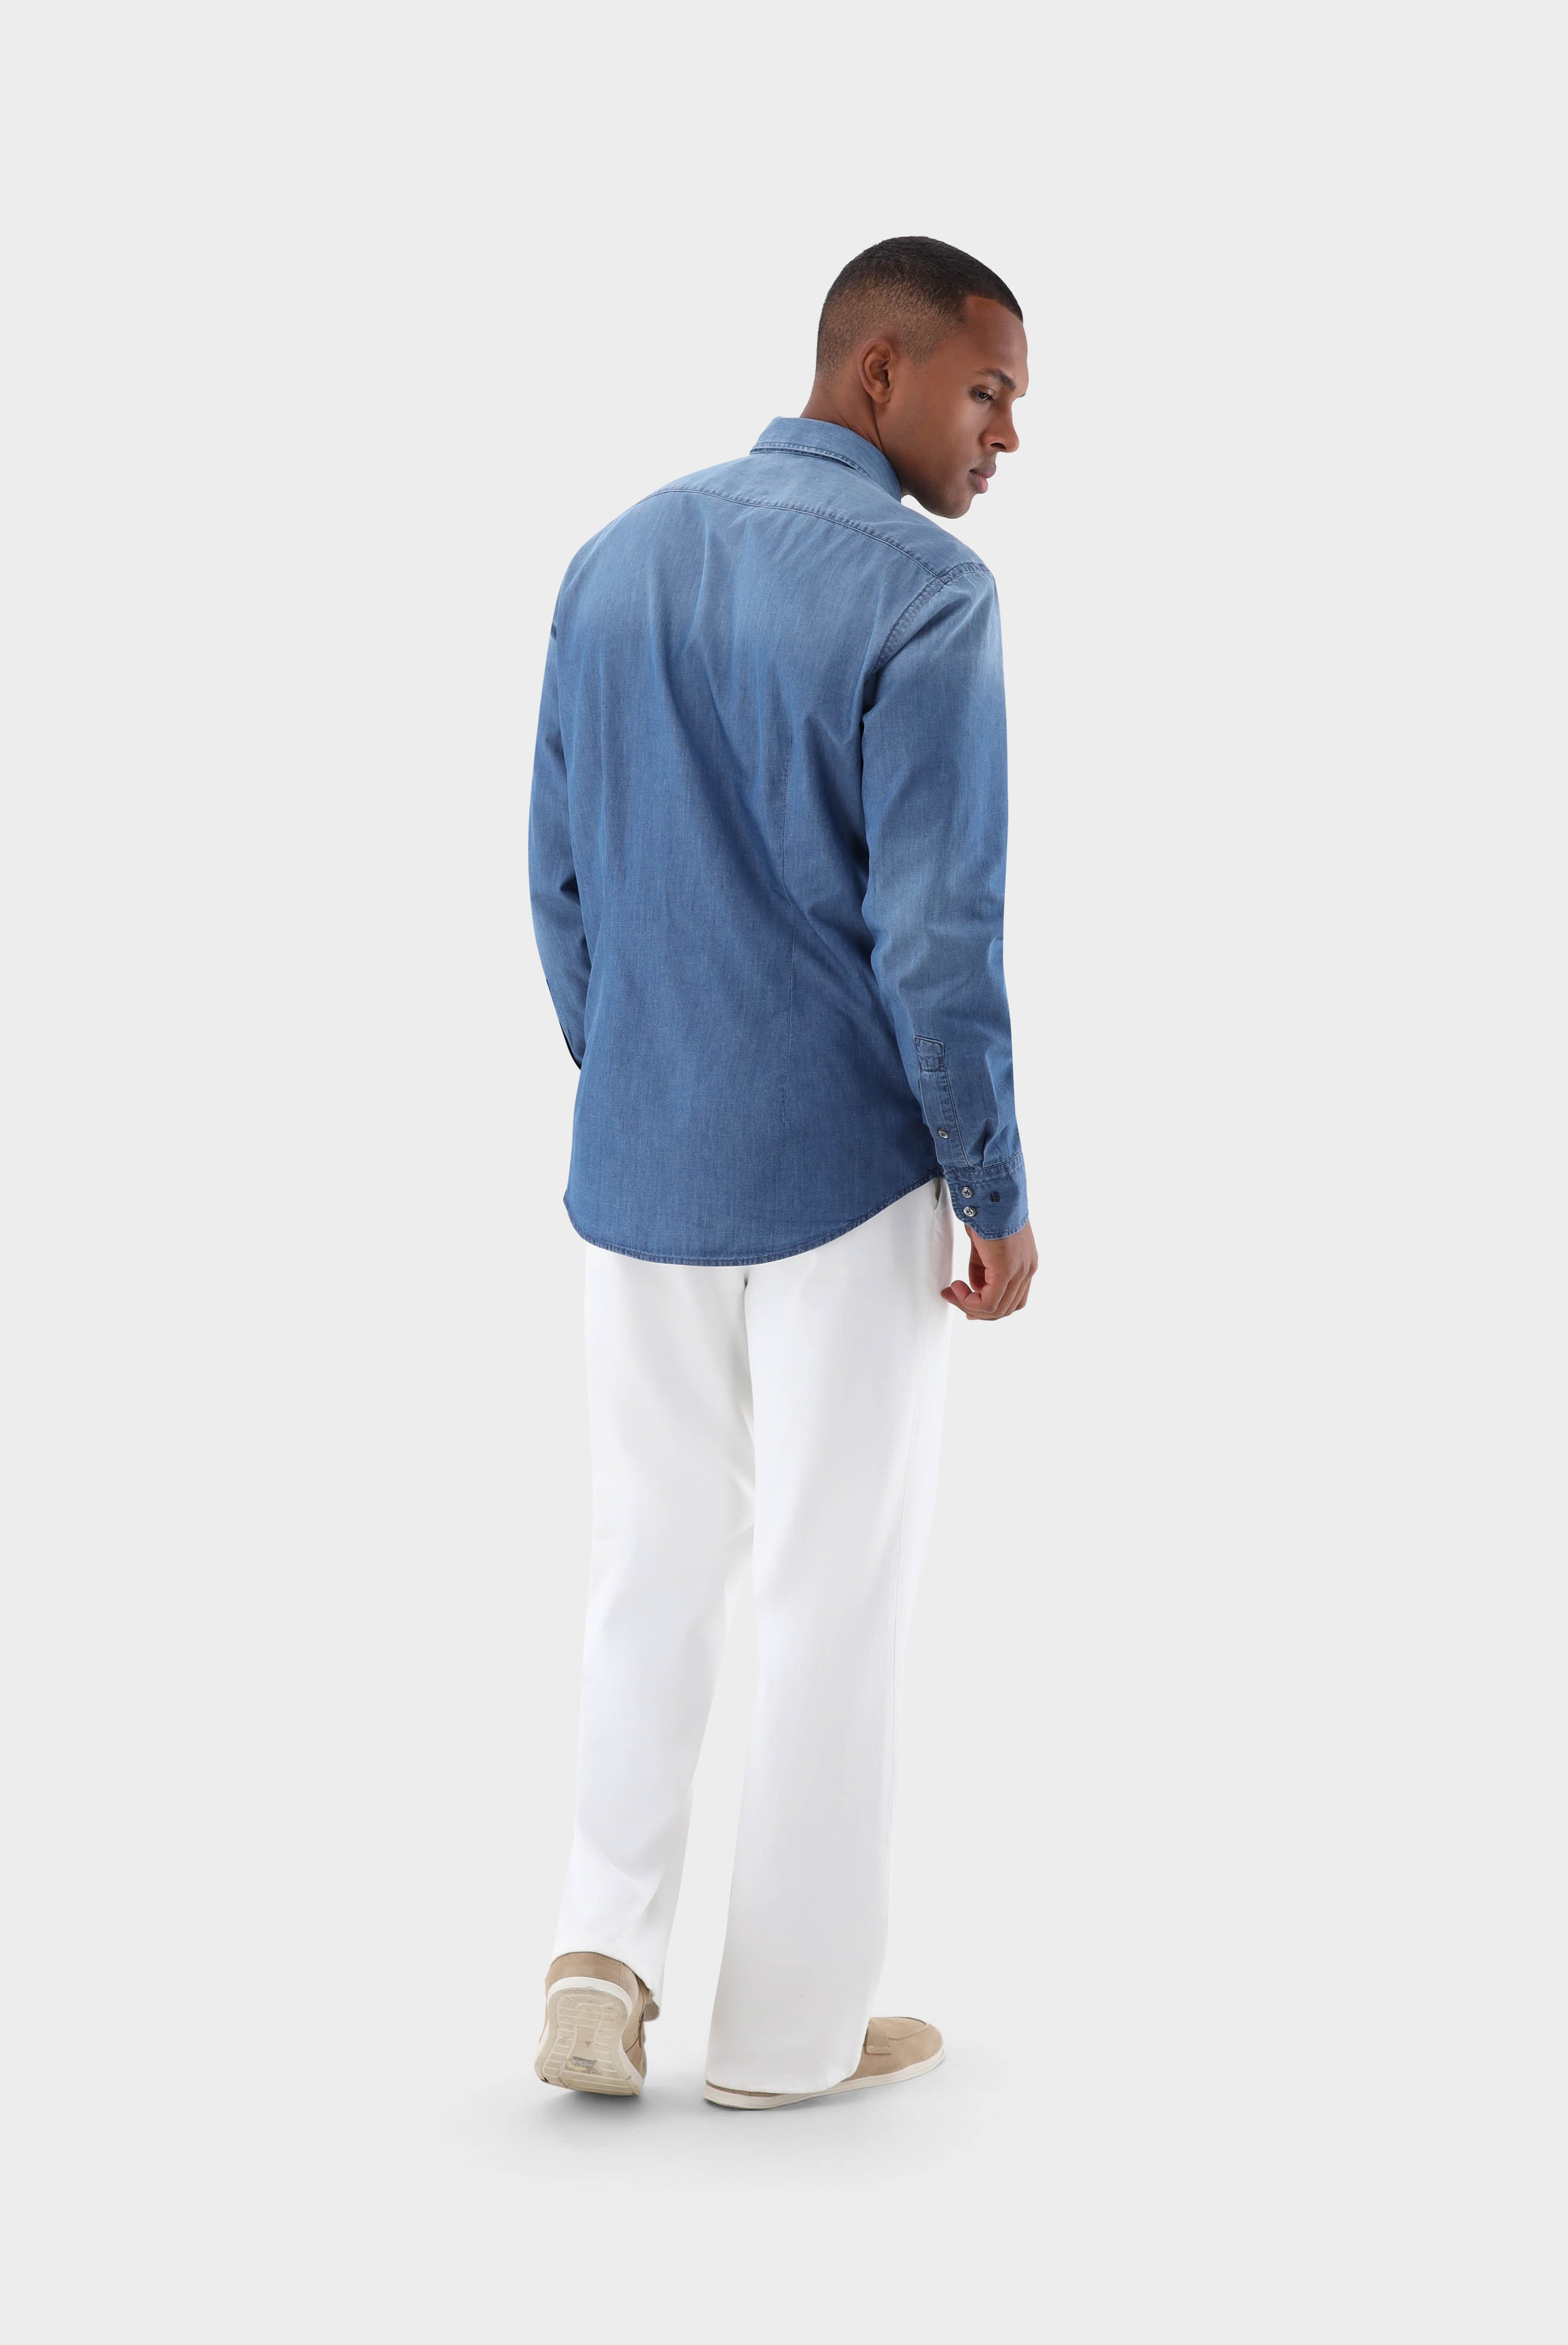 Casual Hemden+Jeans Hemd Tailor Fit+20.2013.ET.155330.740.39